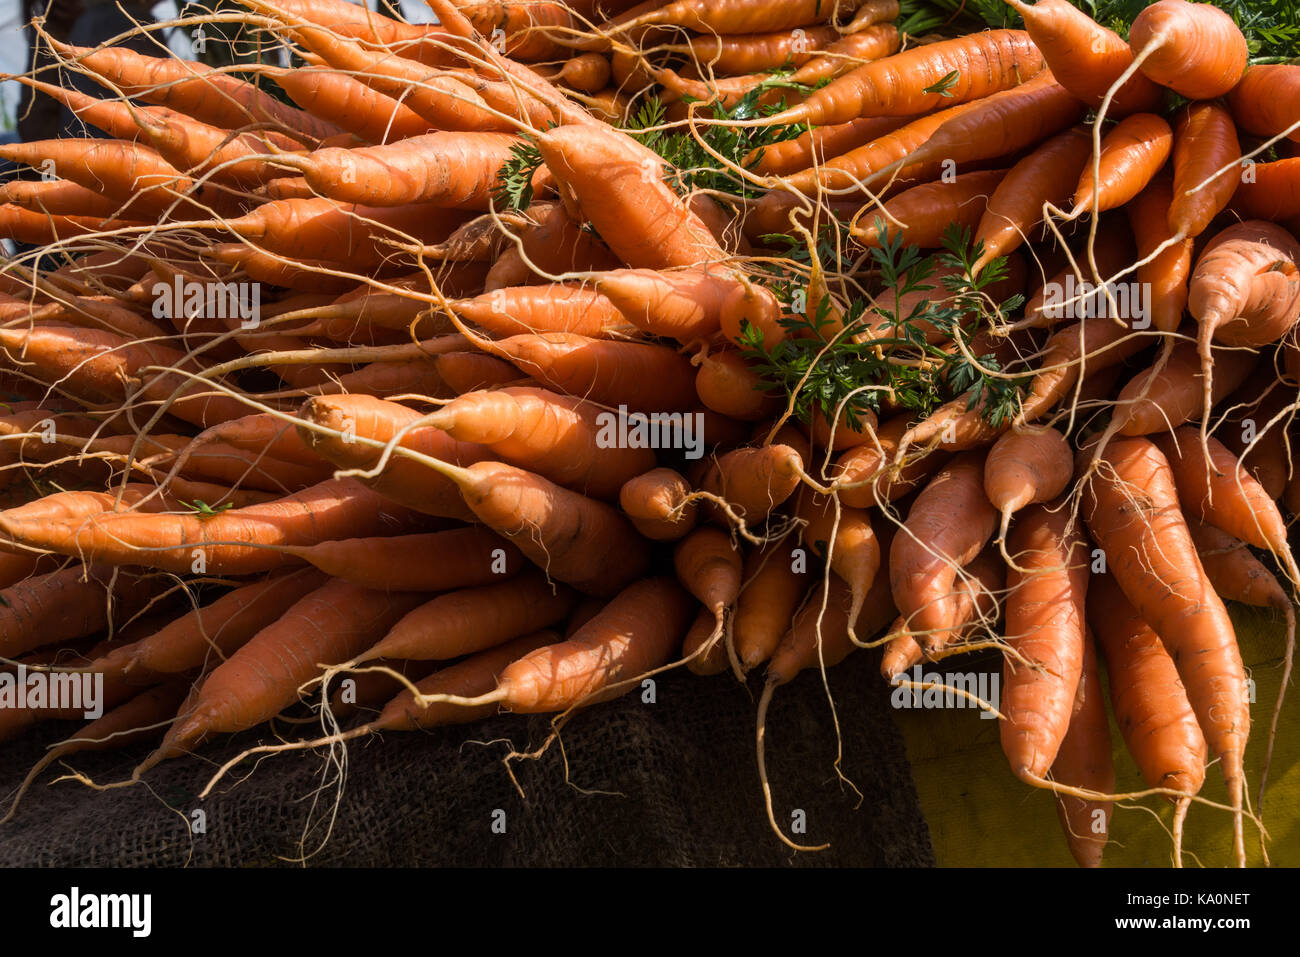 En bonne santé et de carotte rouge sur un marché Banque D'Images